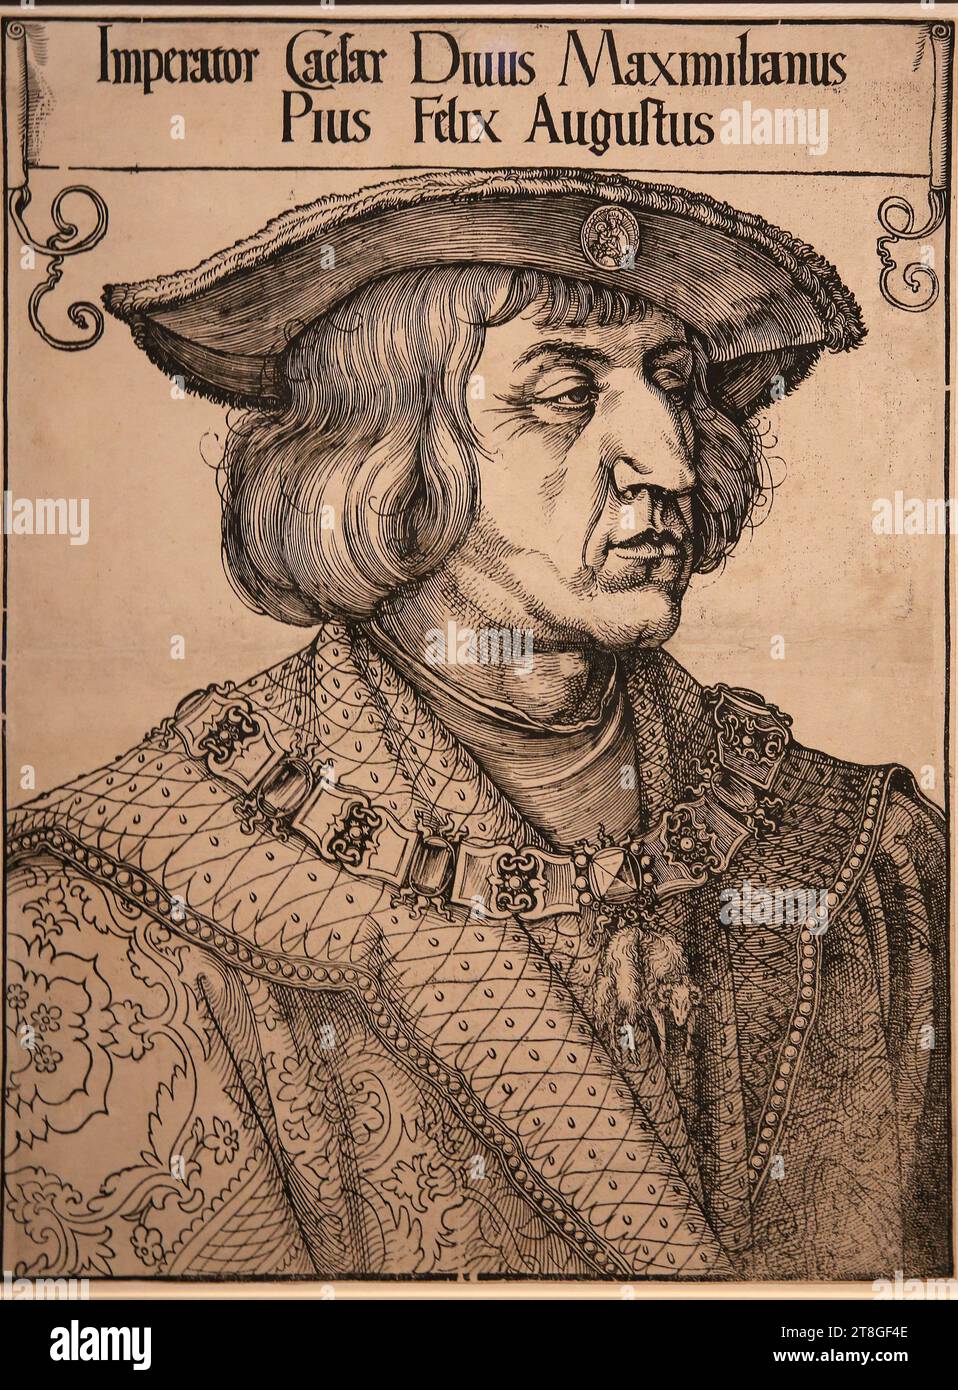 Maximilian I. (1459-1419). Kaiser des Heiligen römischen Reiches. Stich von Albrecht Dürer, 1518. British Museum. London.GBR. Stockfoto